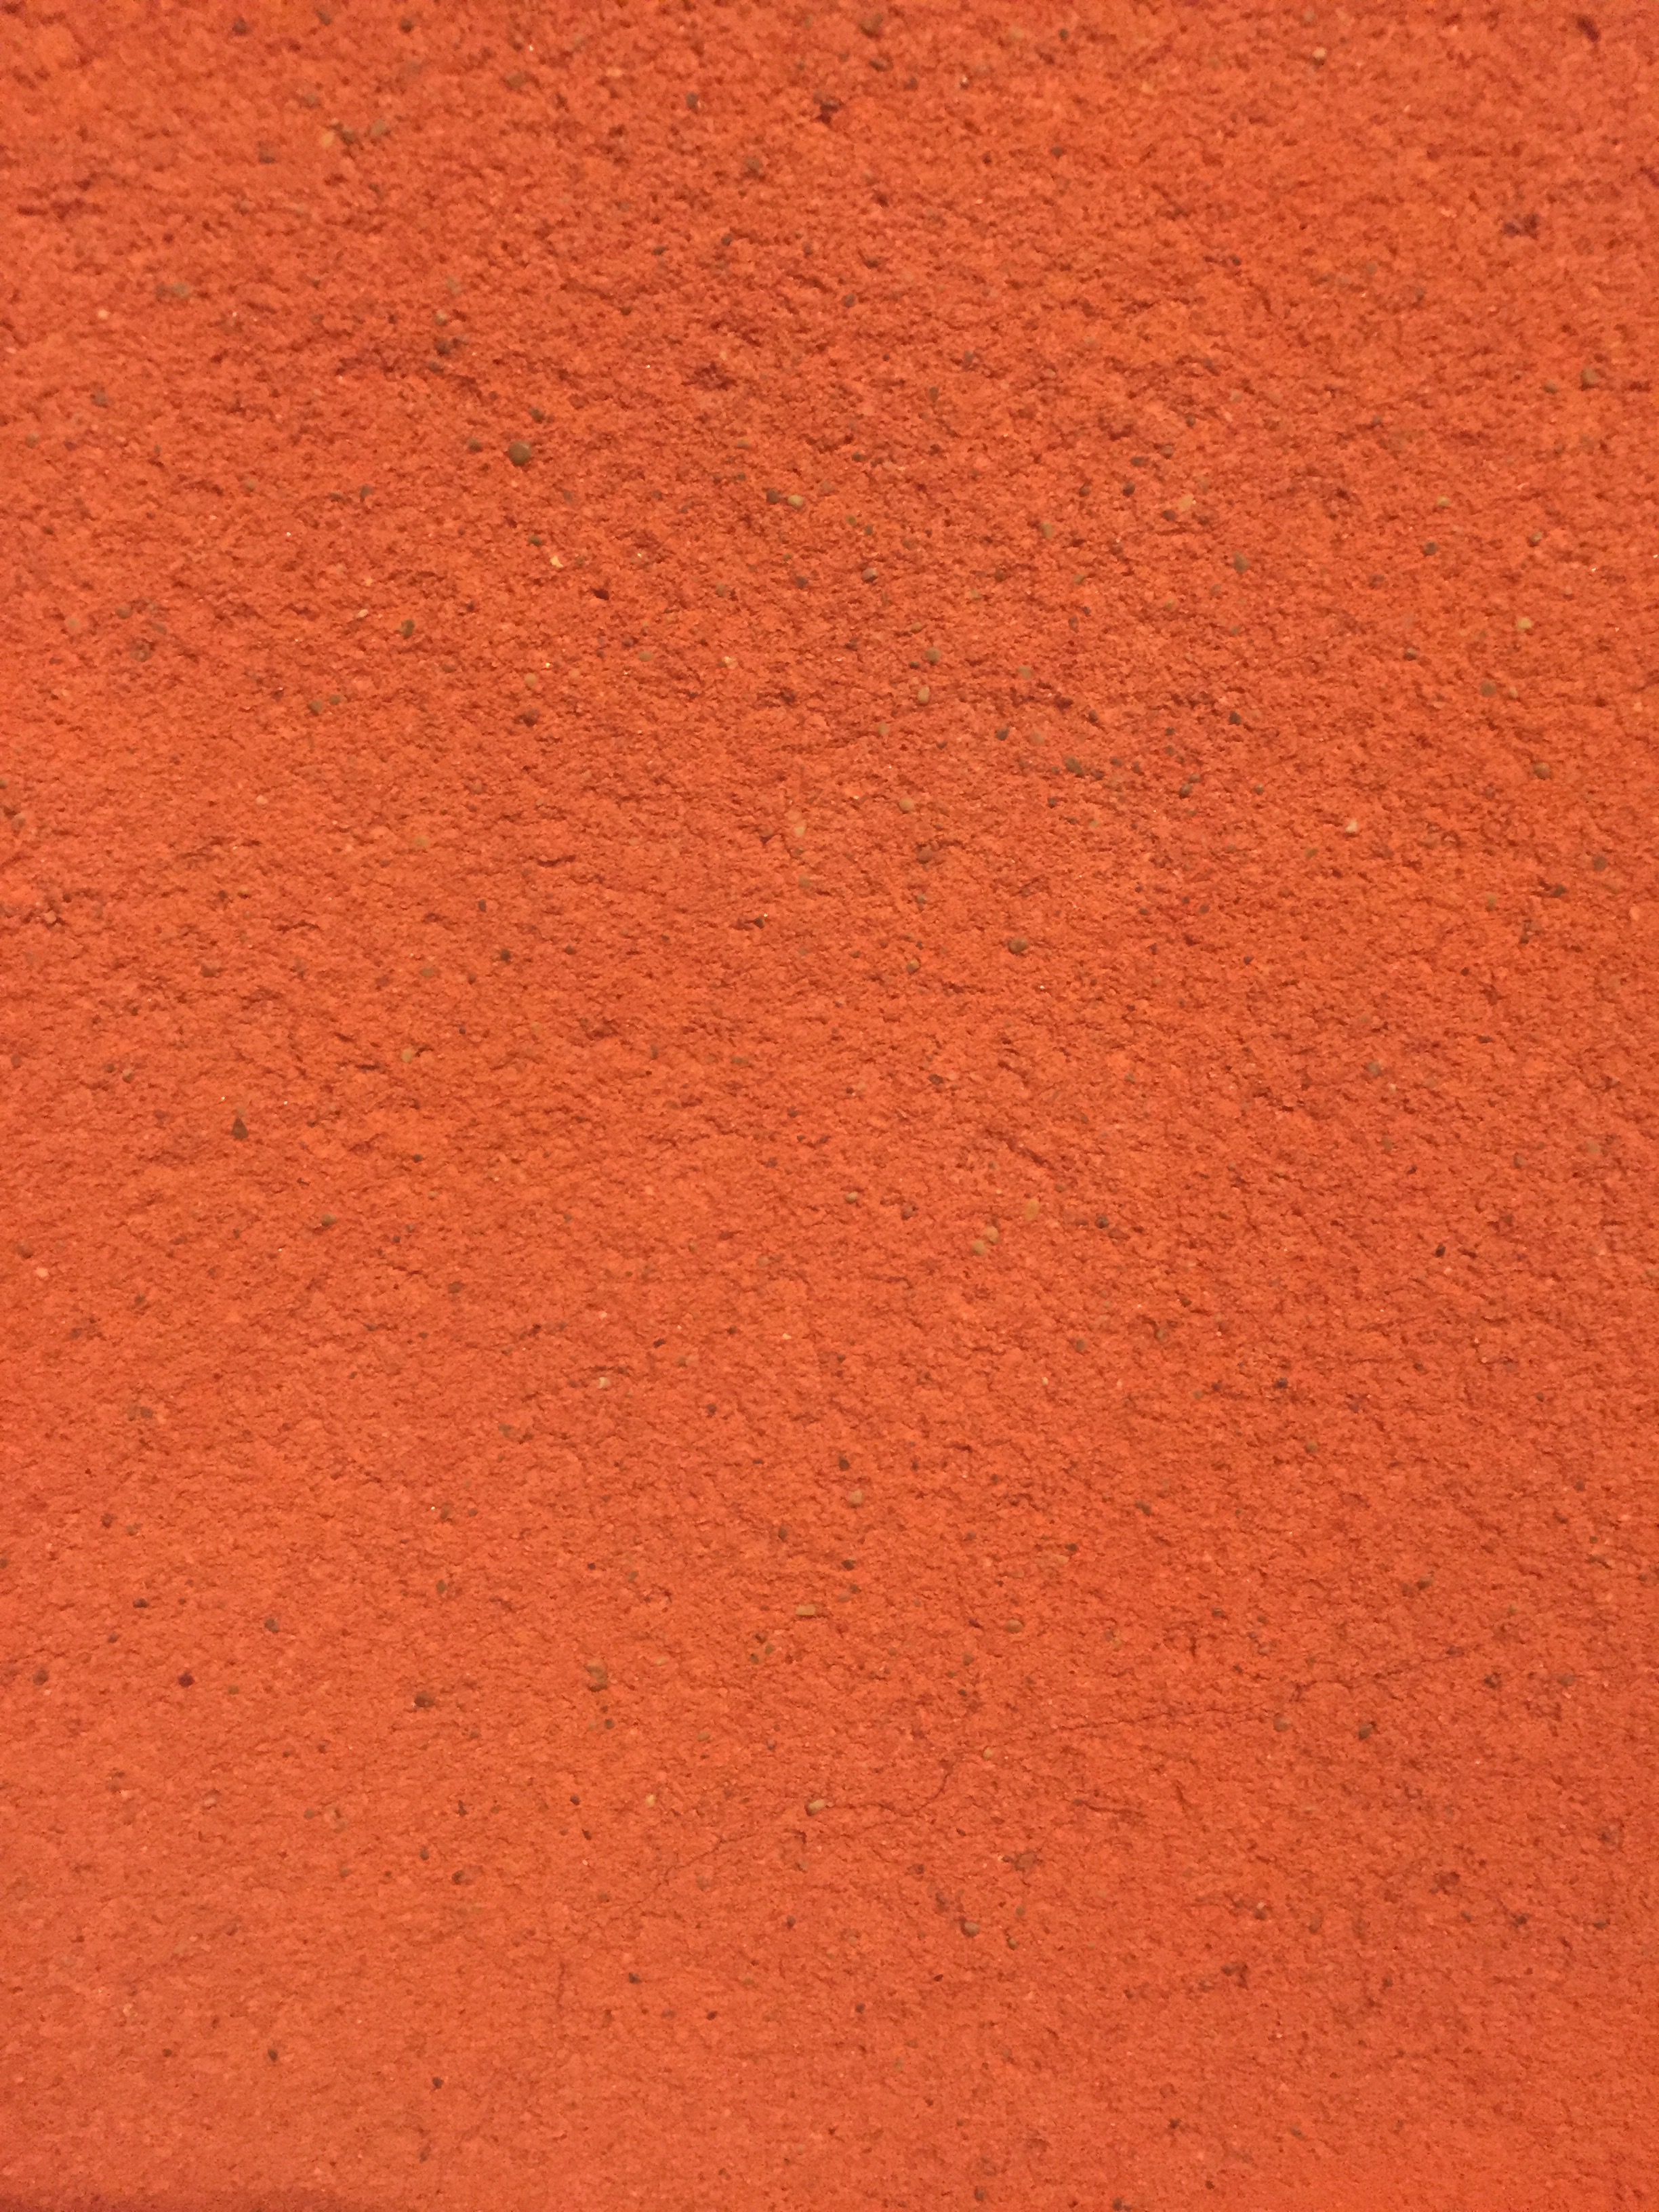 Оранжевый бетон